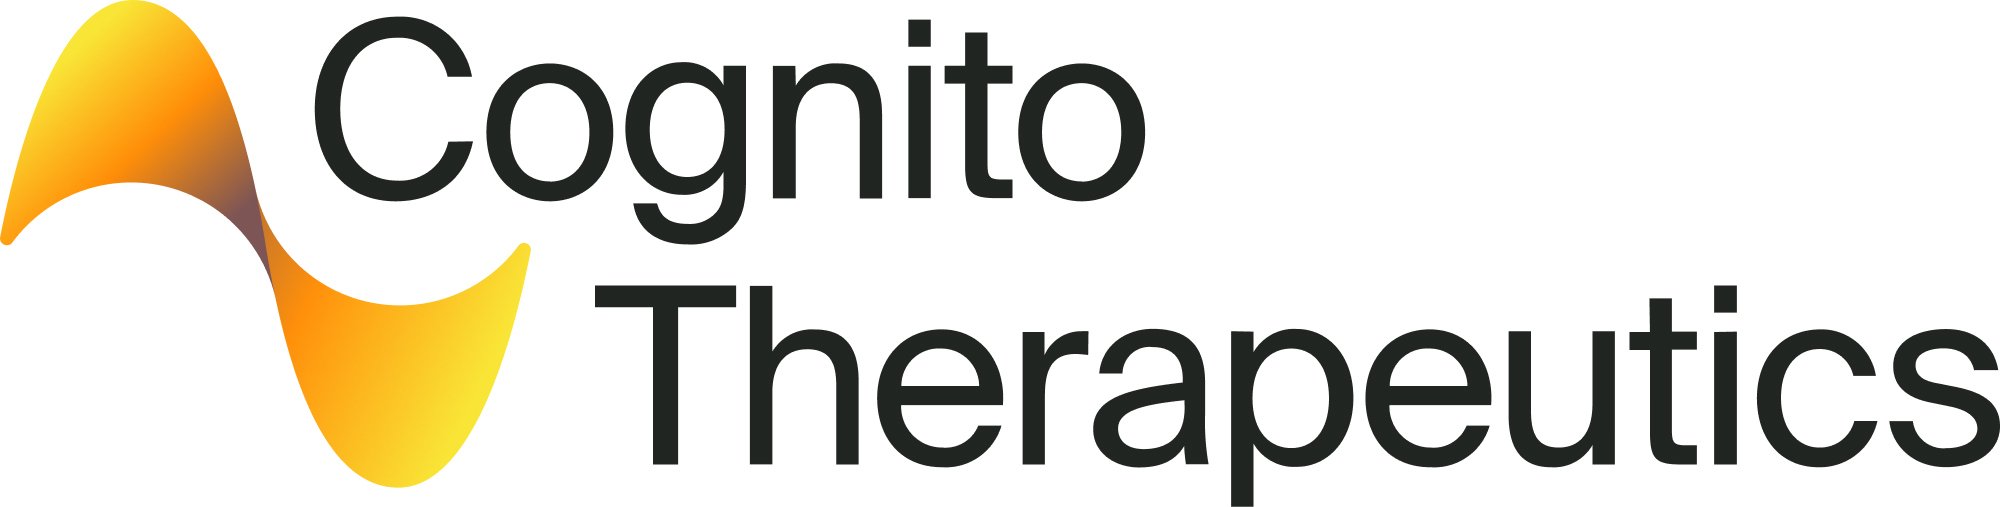 logo - cognito therapeutics.jpg